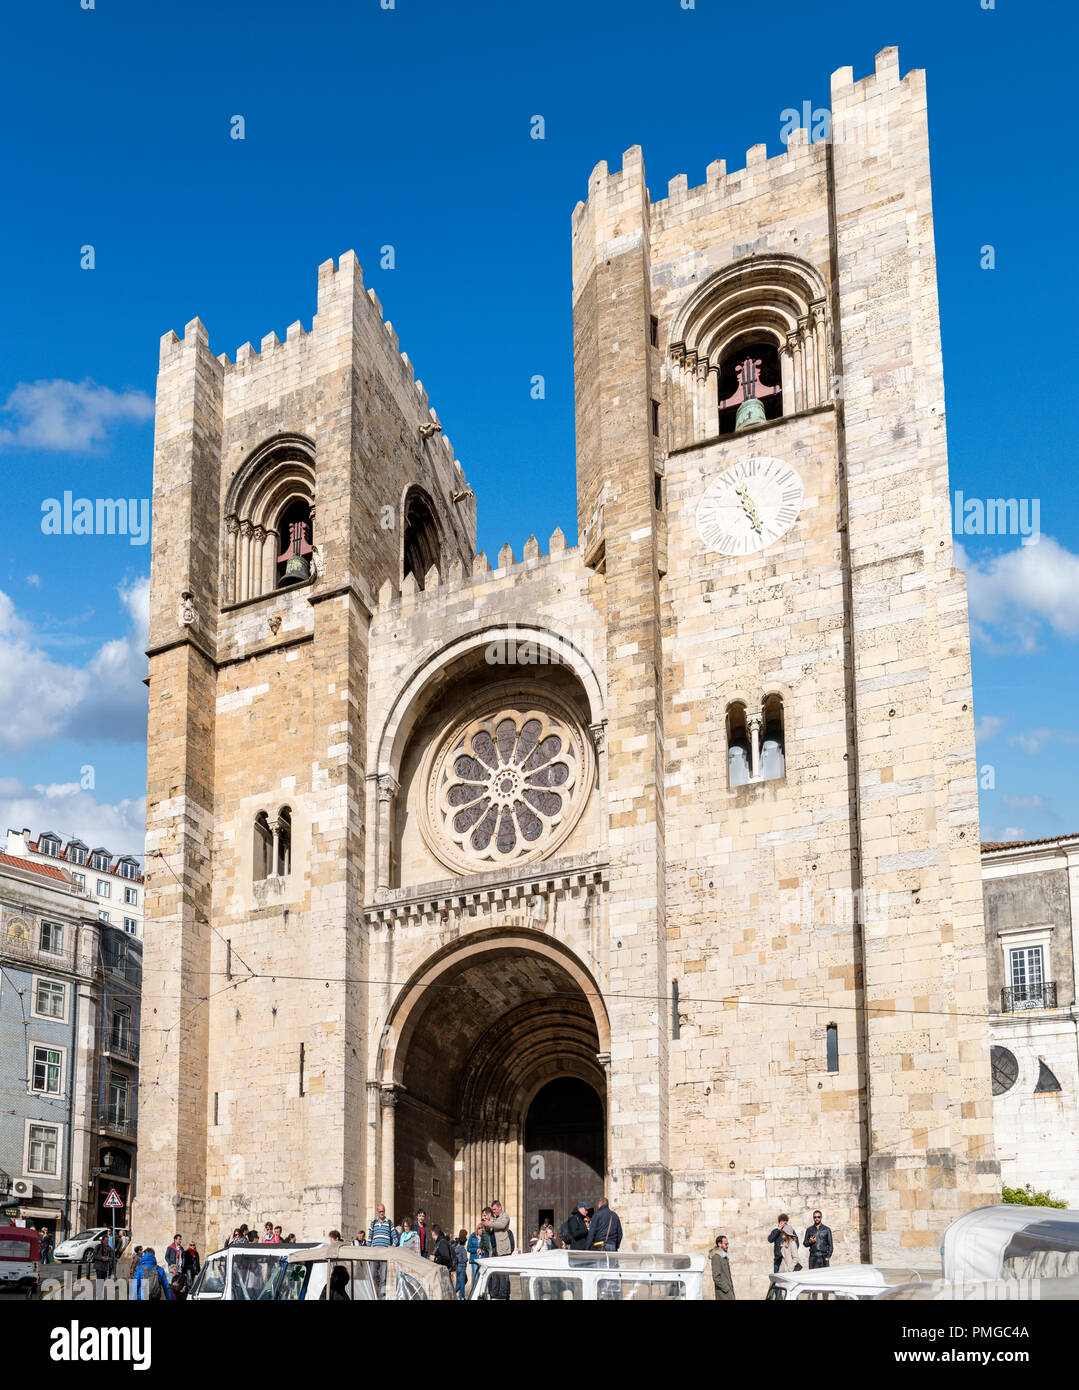 La Cathédrale de Lisbonne (sé de Lisboa), Lisbonne, Portugal Banque D'Images